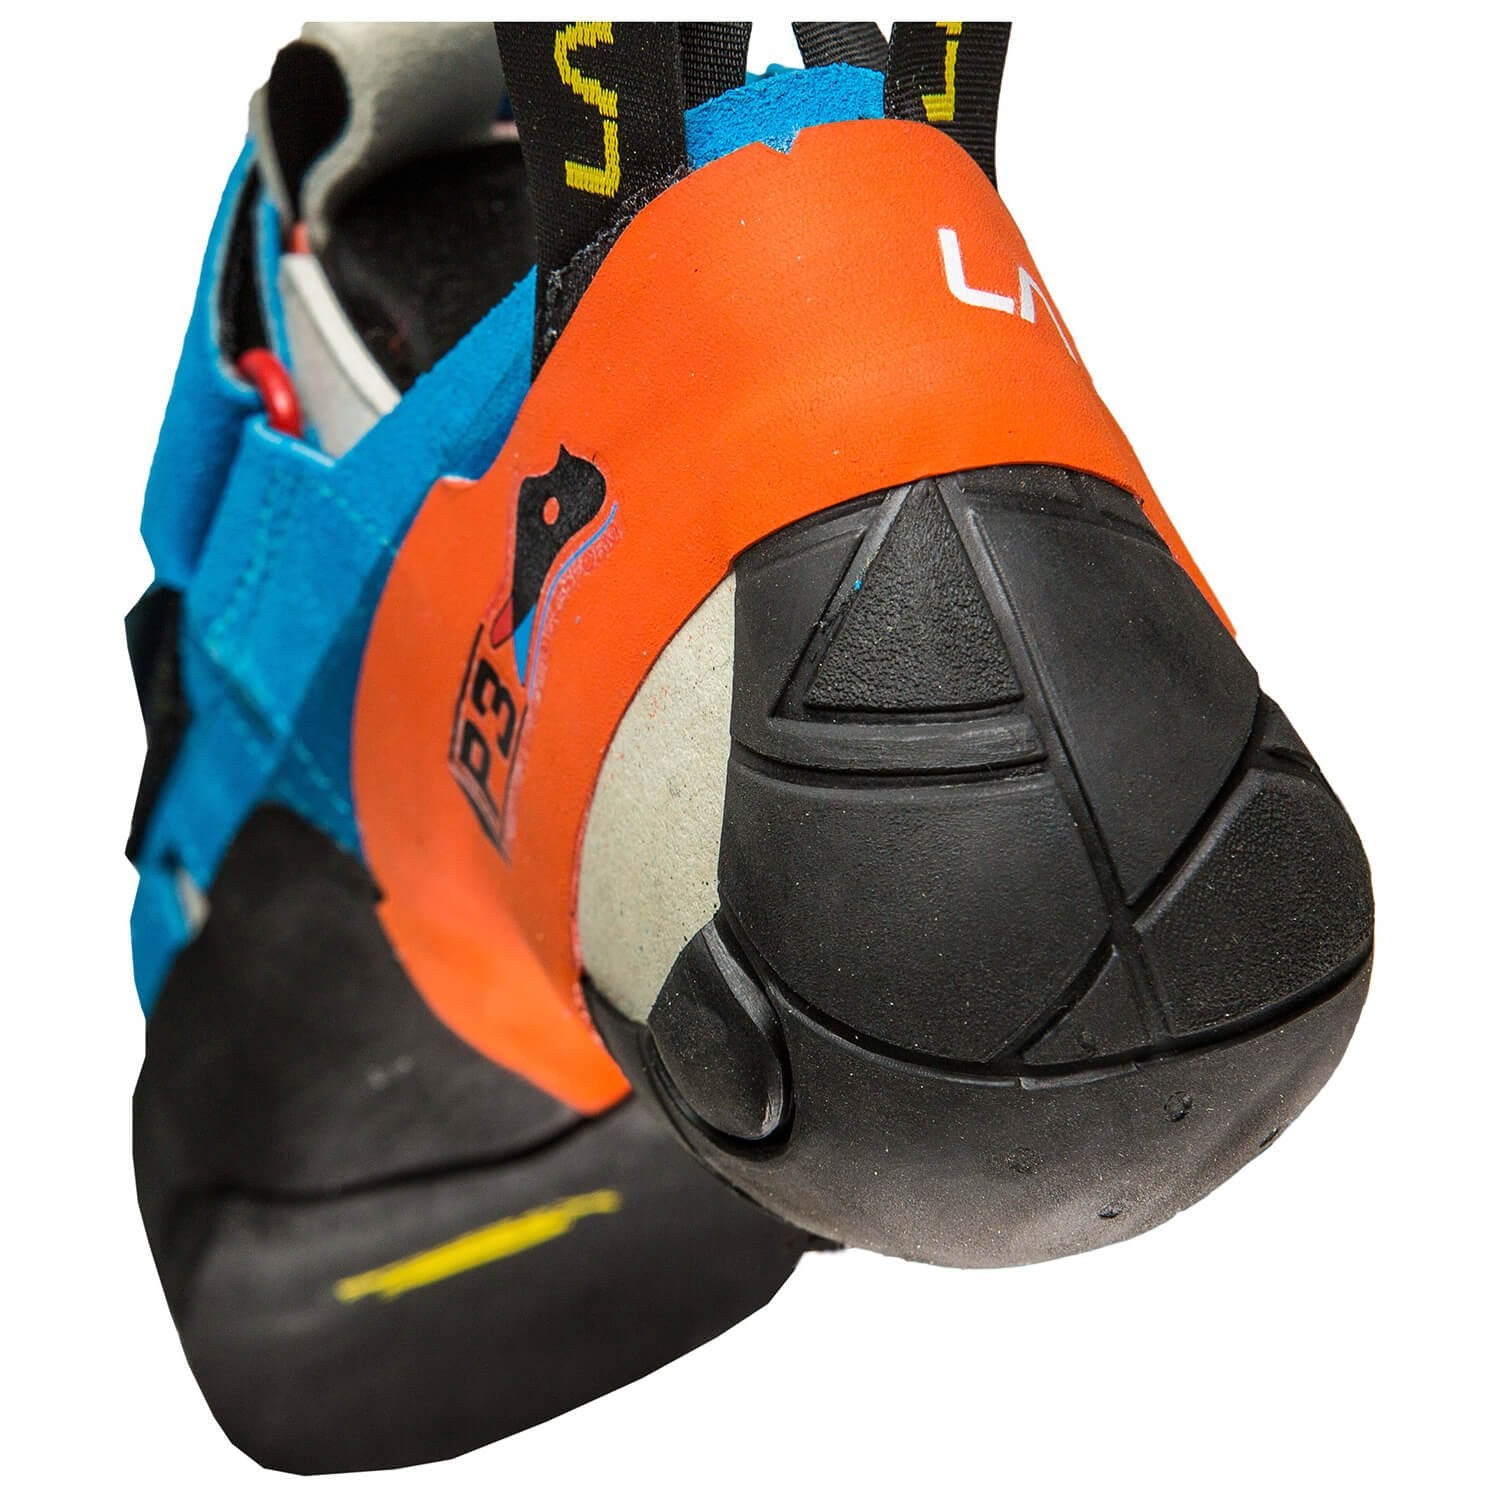 La Sportiva Otaki climbing shoe, in black, orange and blue colours